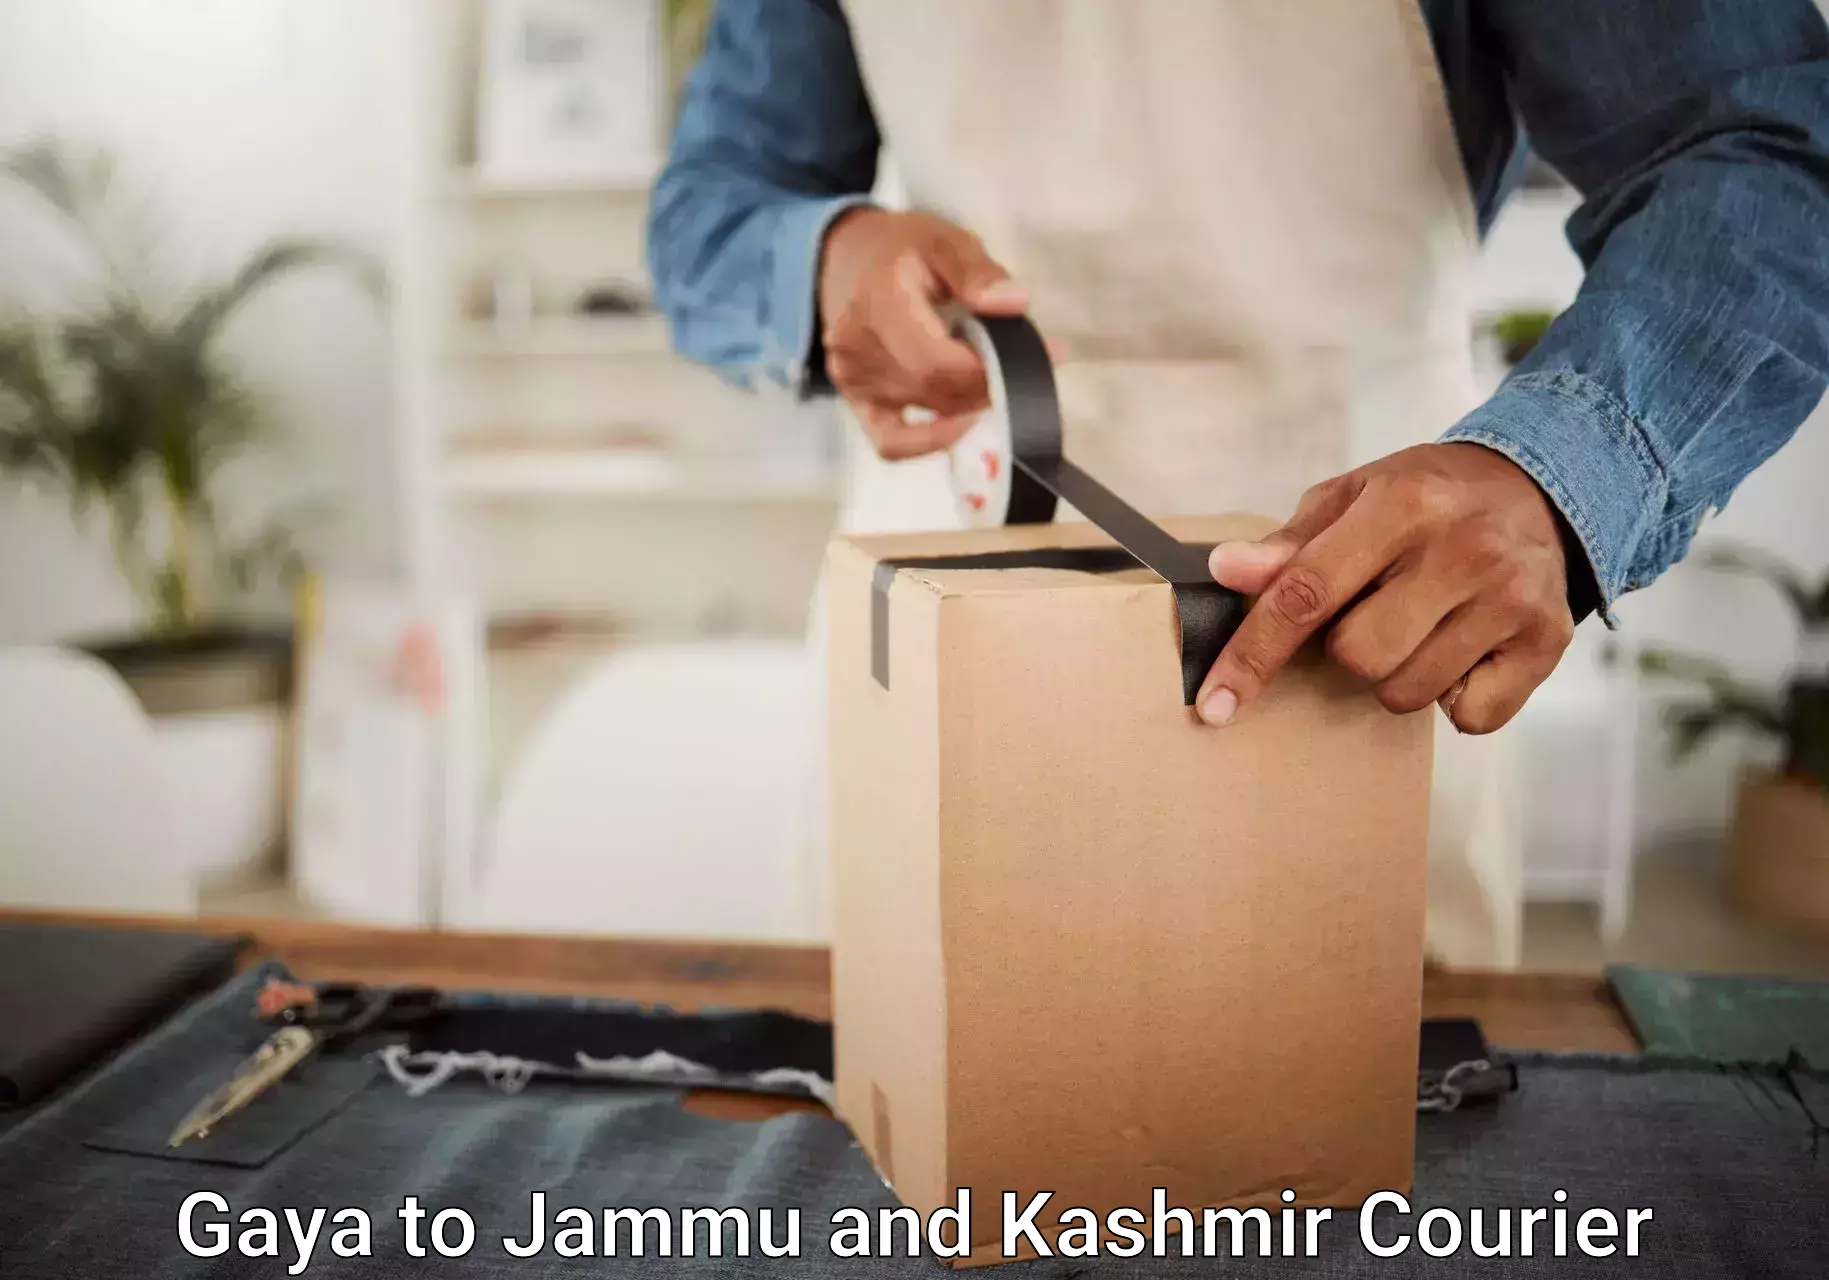 Luggage transit service Gaya to Jammu and Kashmir